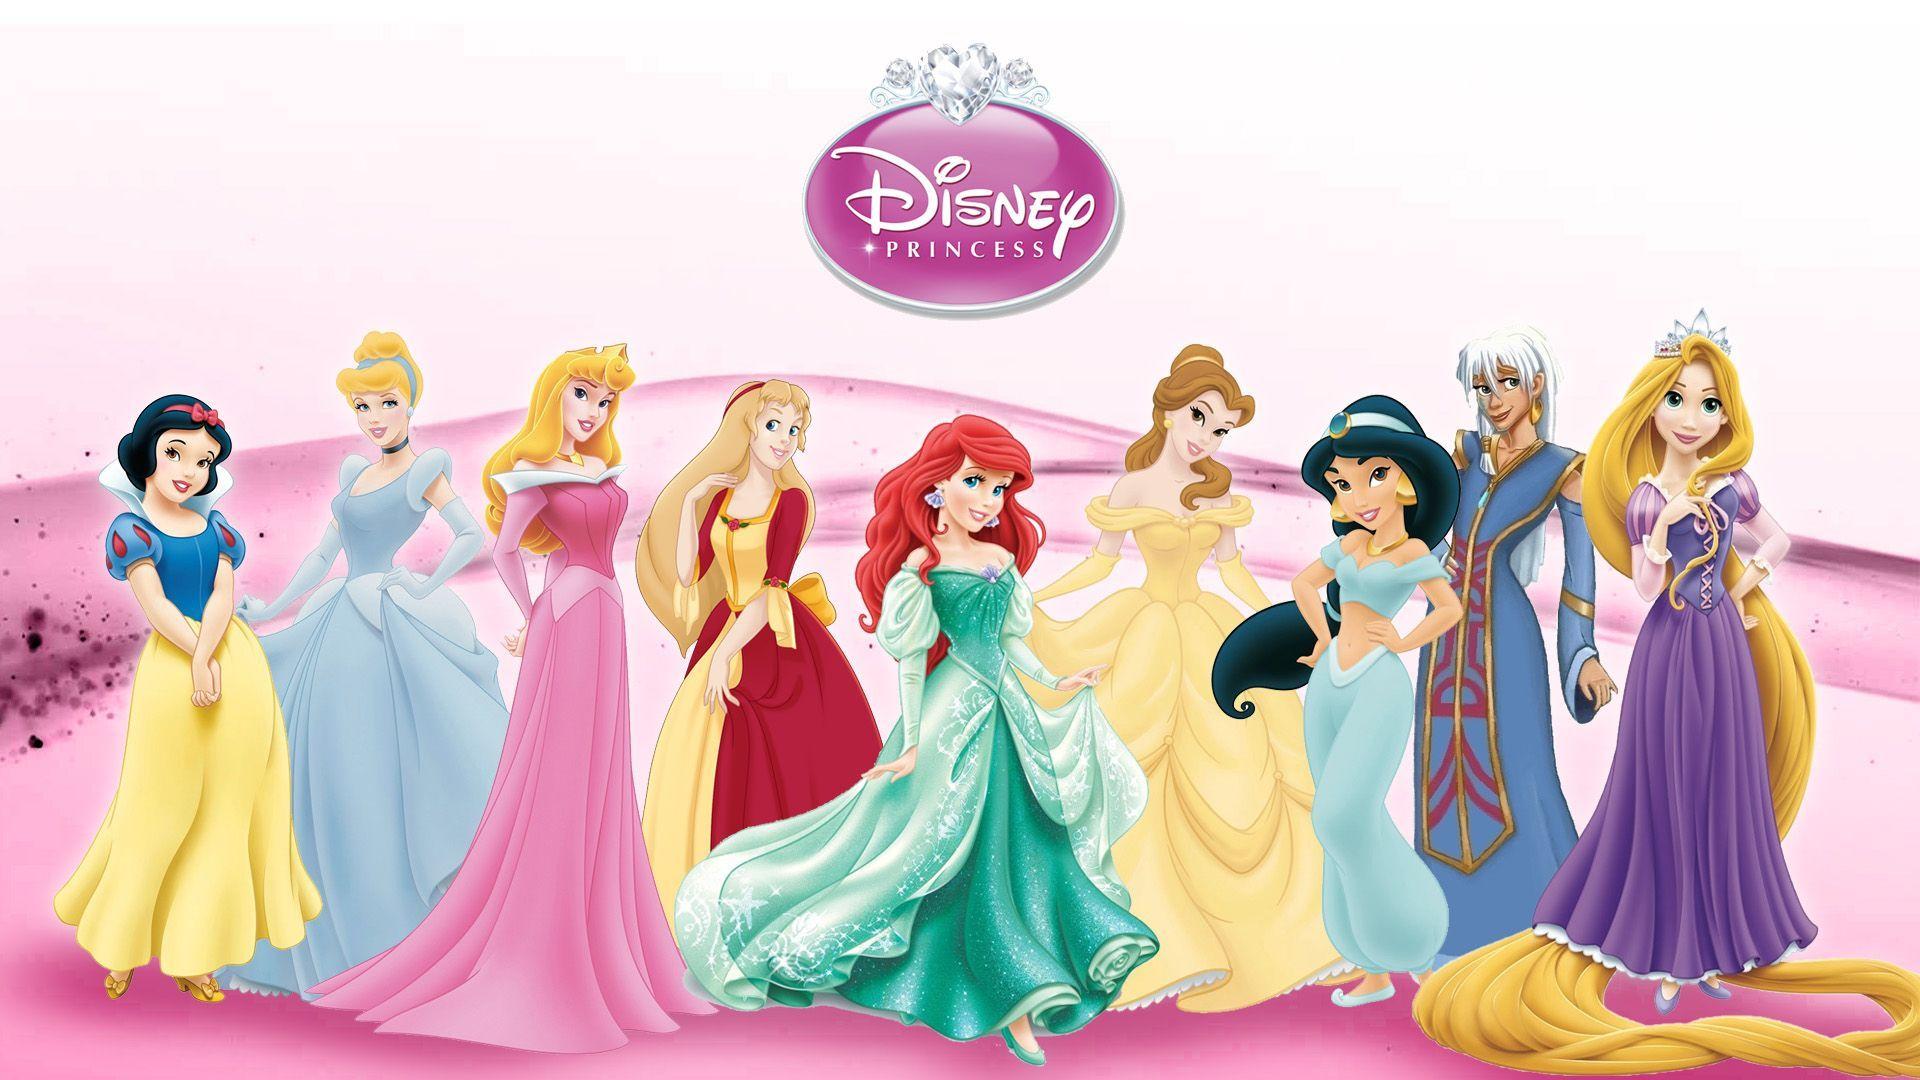 Disney Princess Wallpapers Top Free Disney Princess Backgrounds Wallpaperaccess